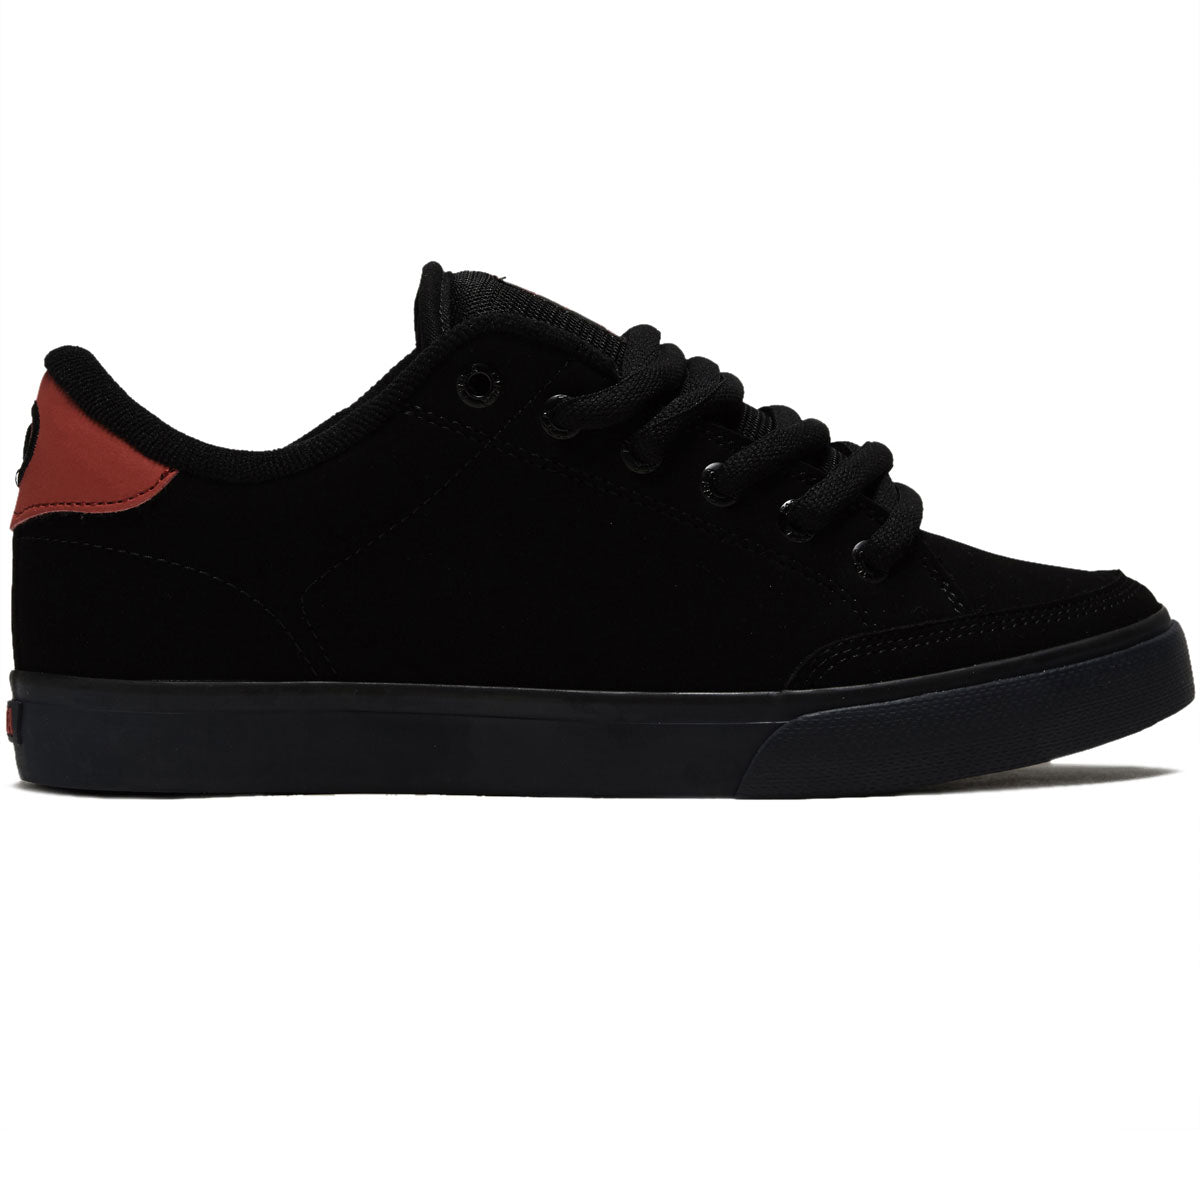 C1rca AL 50 Pro Shoes - Black/Scarlet image 1